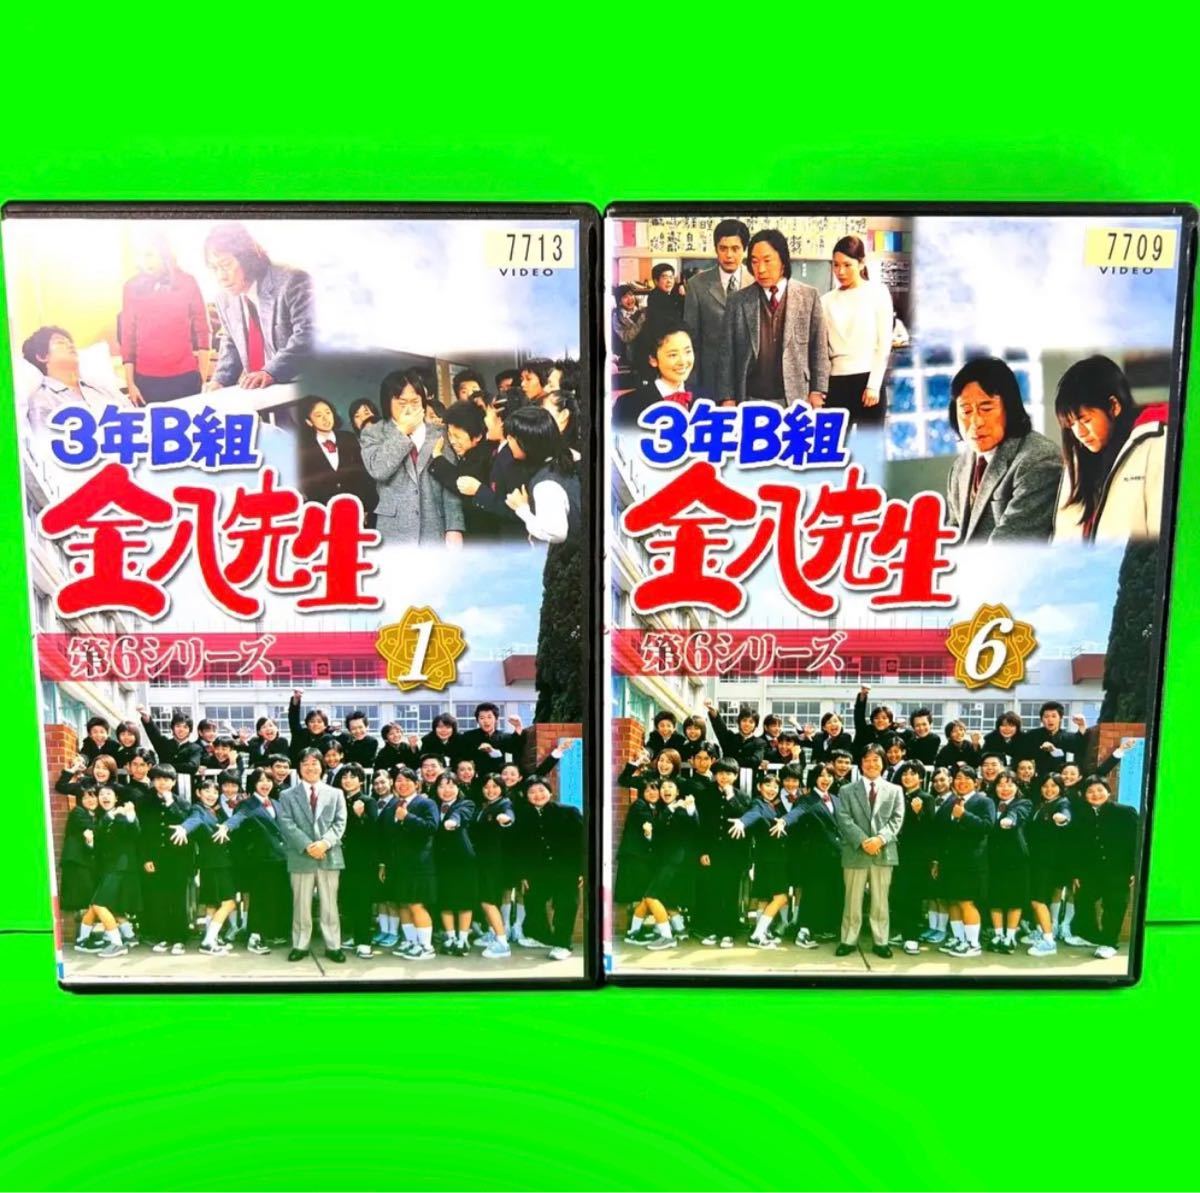 ケース付3年B組金八先生DVD 第6シリーズ全10巻武田鉄矢| JChere雅虎